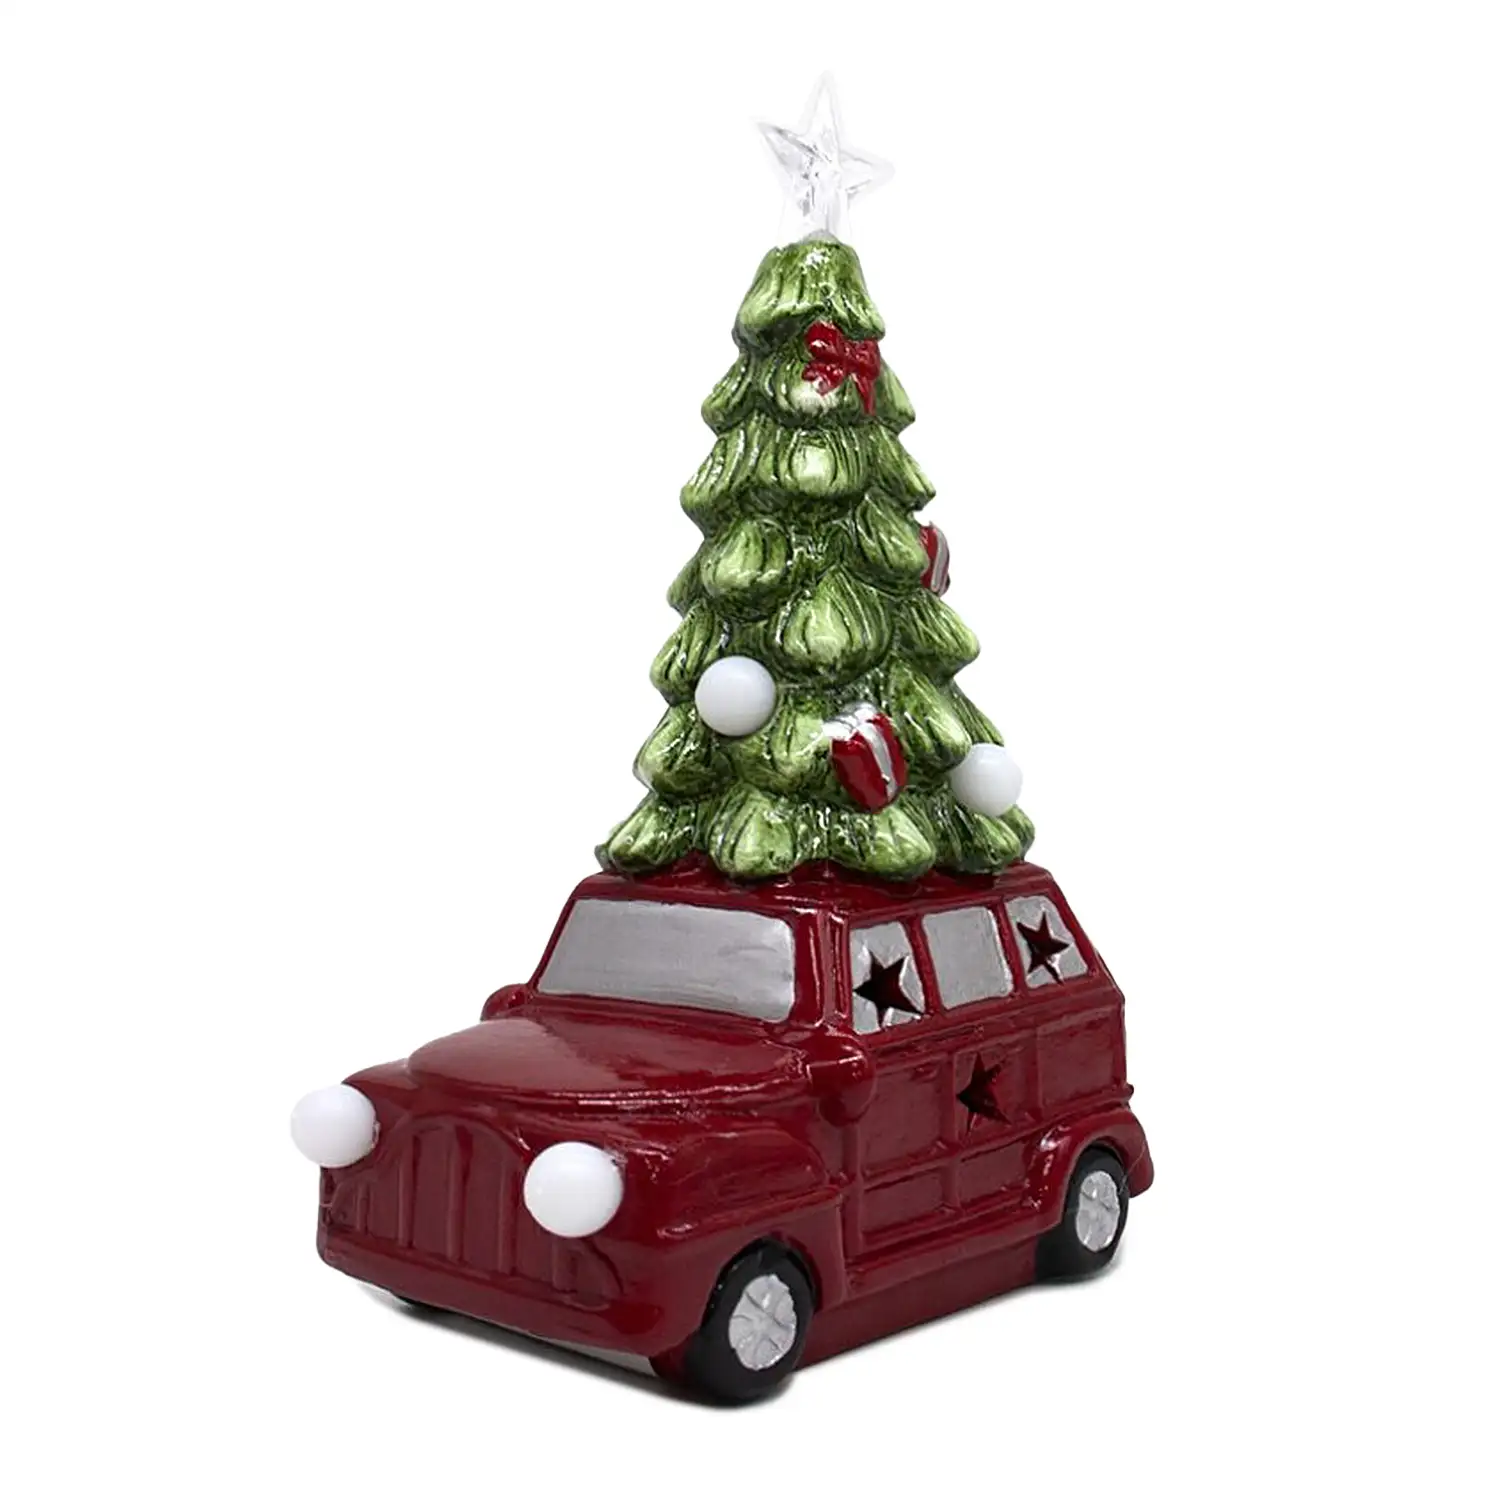 Figura coche con árbol de navidad y luces LED RGB 13x21 cms.